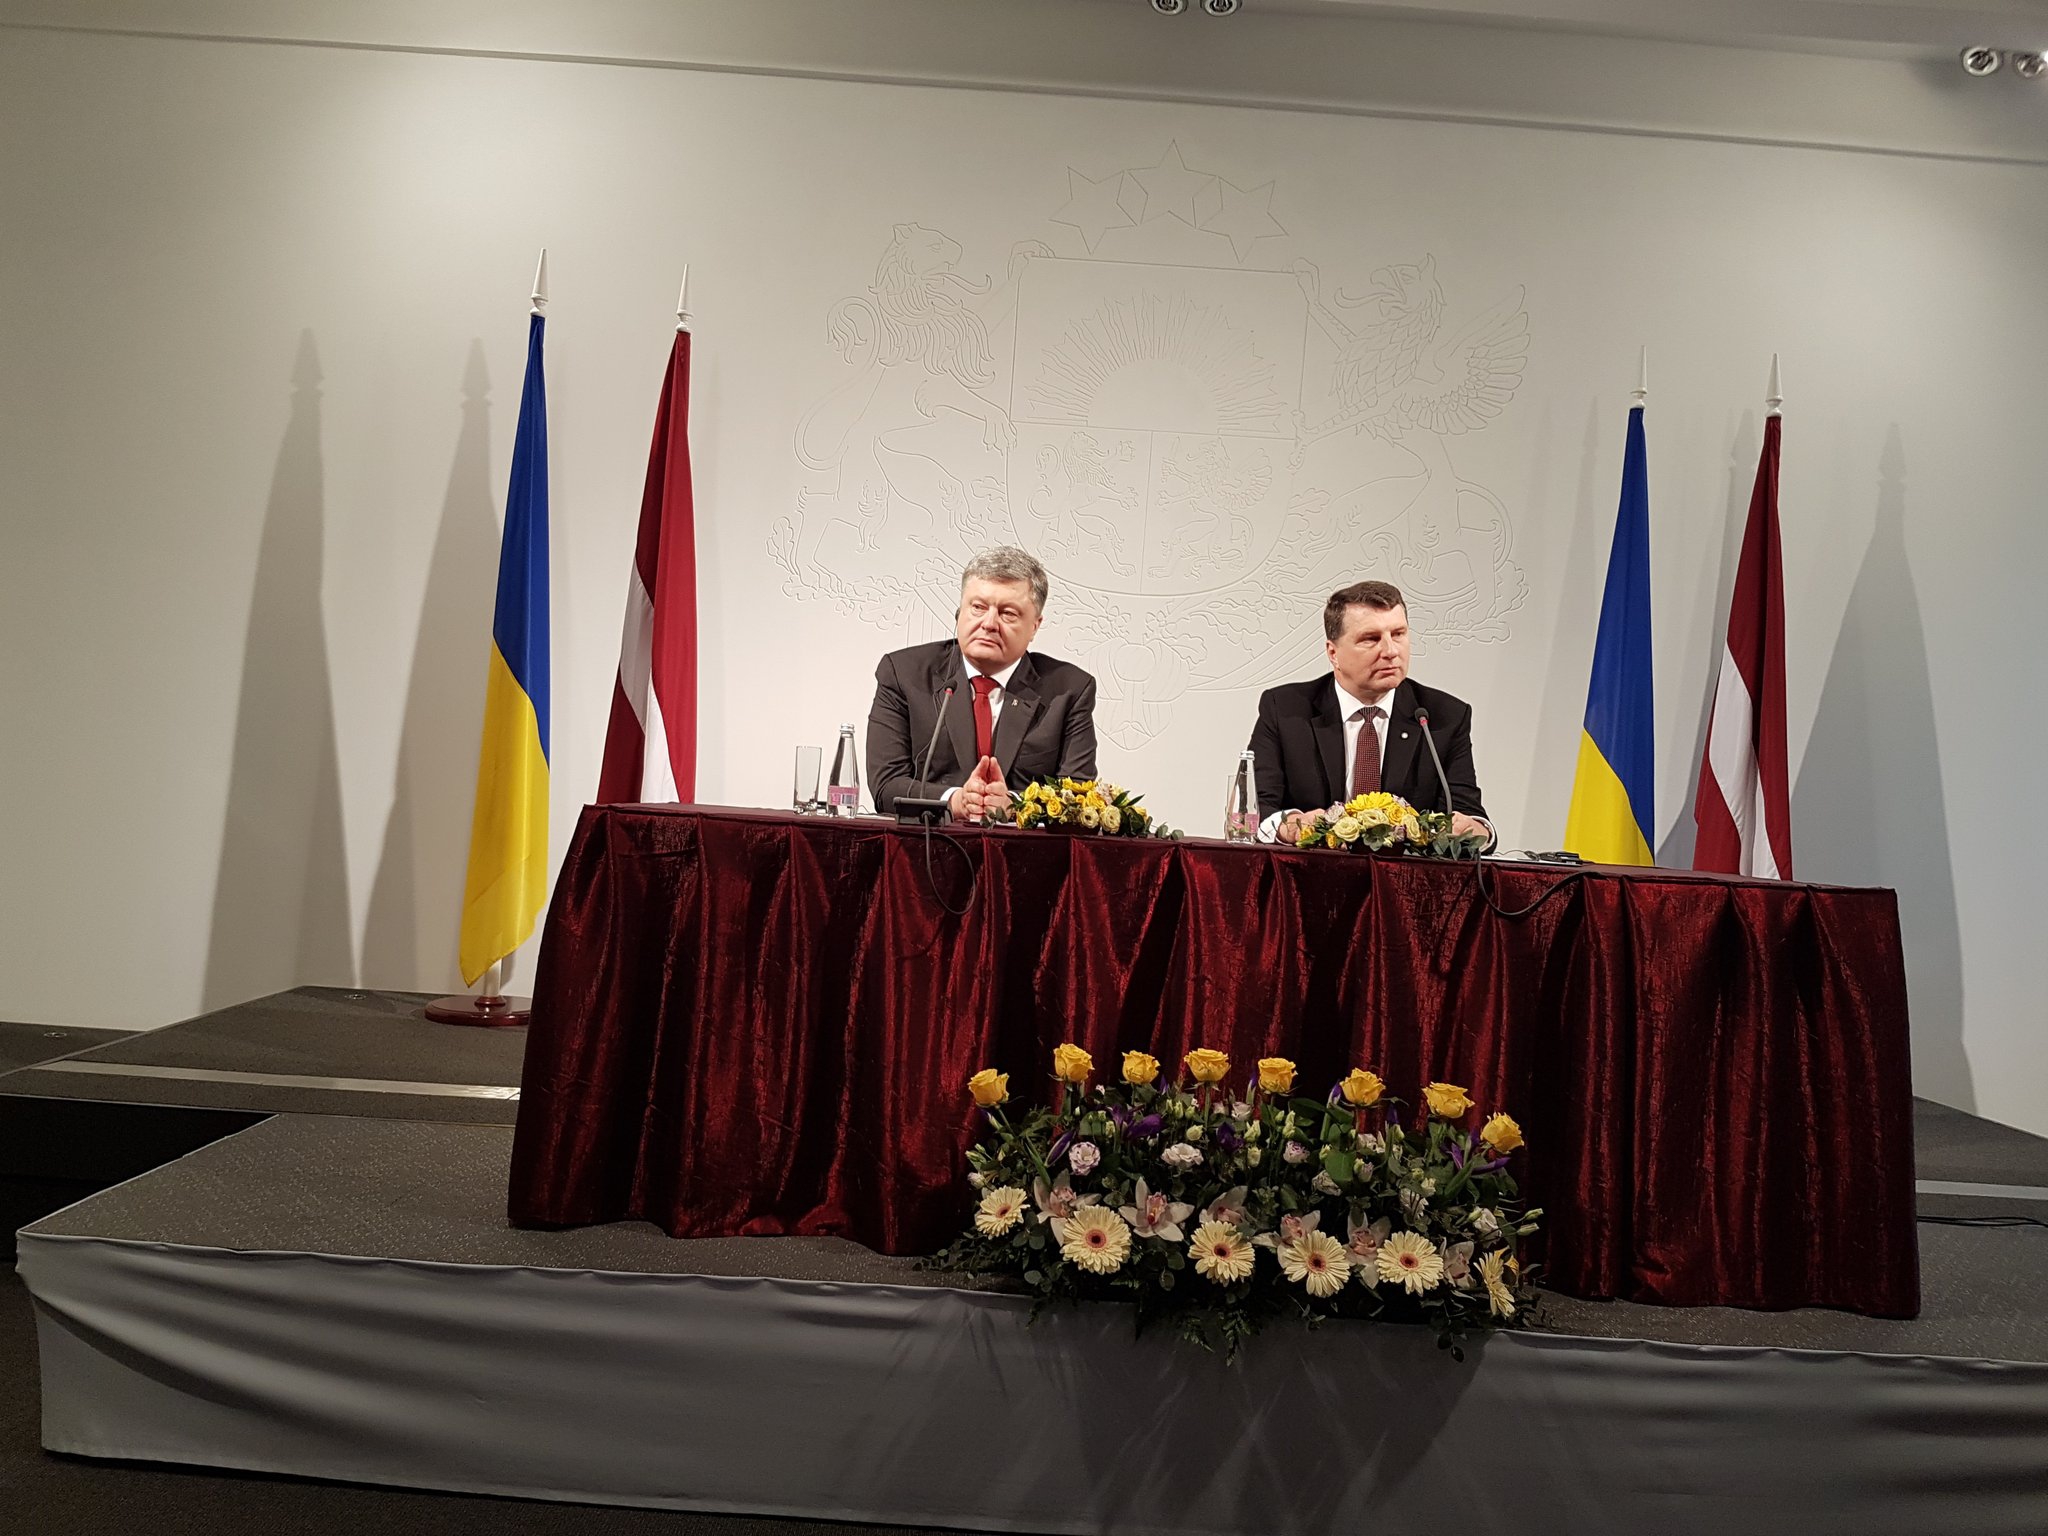 Порошенко считает, что Россия специально нарушает украинское законодательство  - фото 1